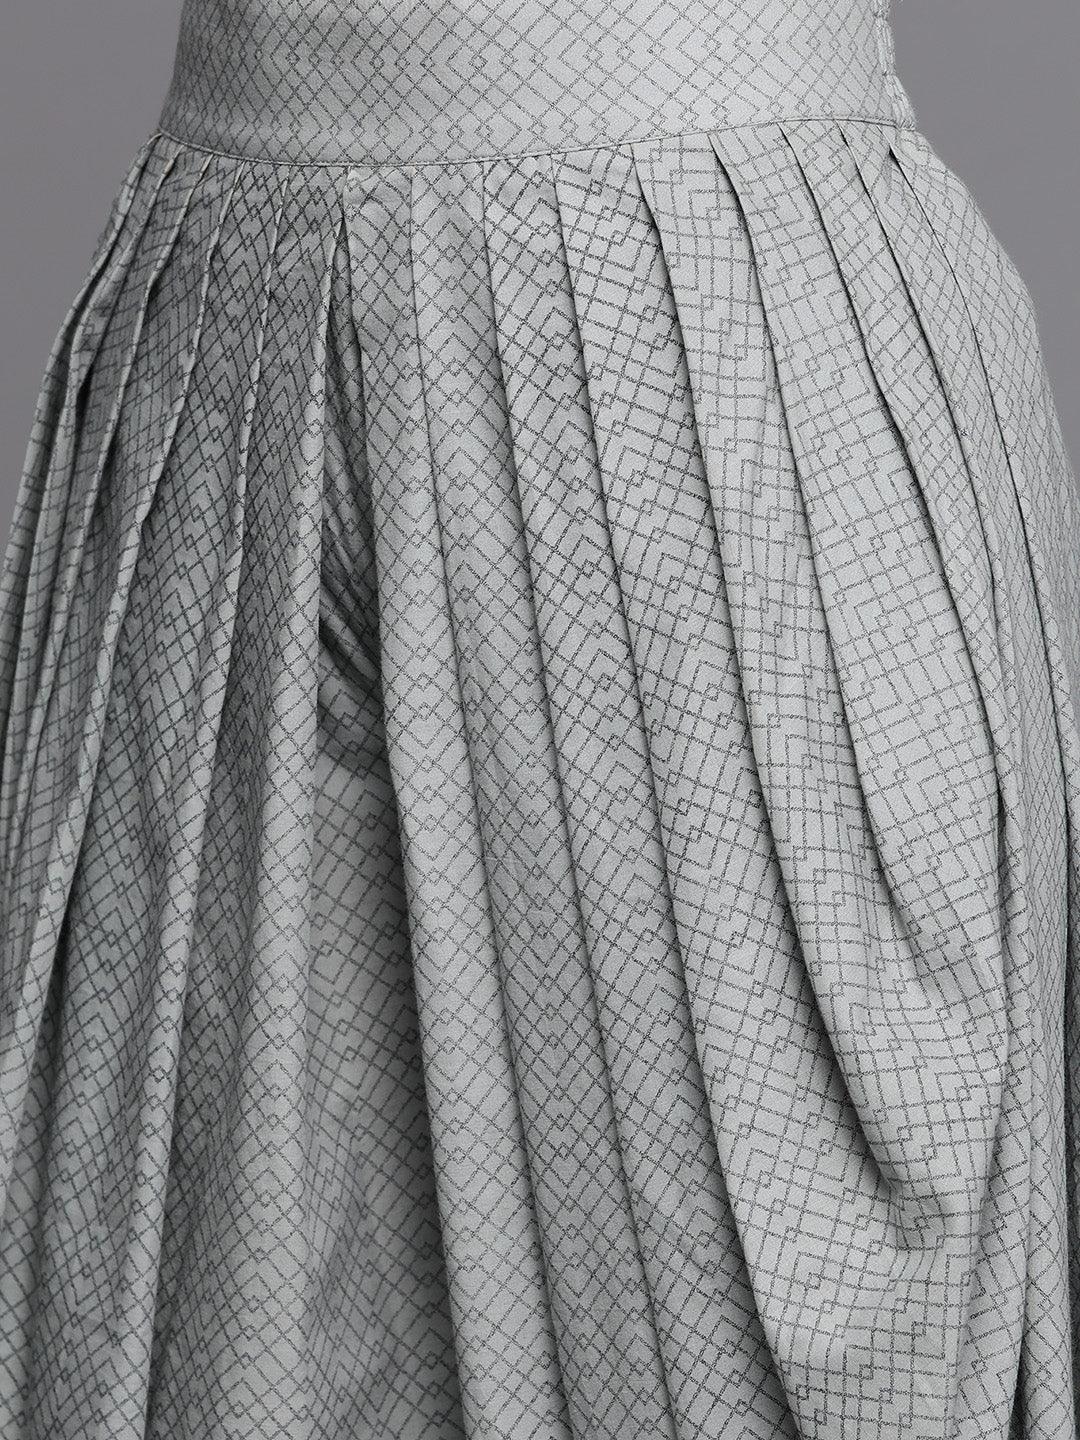 Grey Printed Cotton Suit Set - Libas